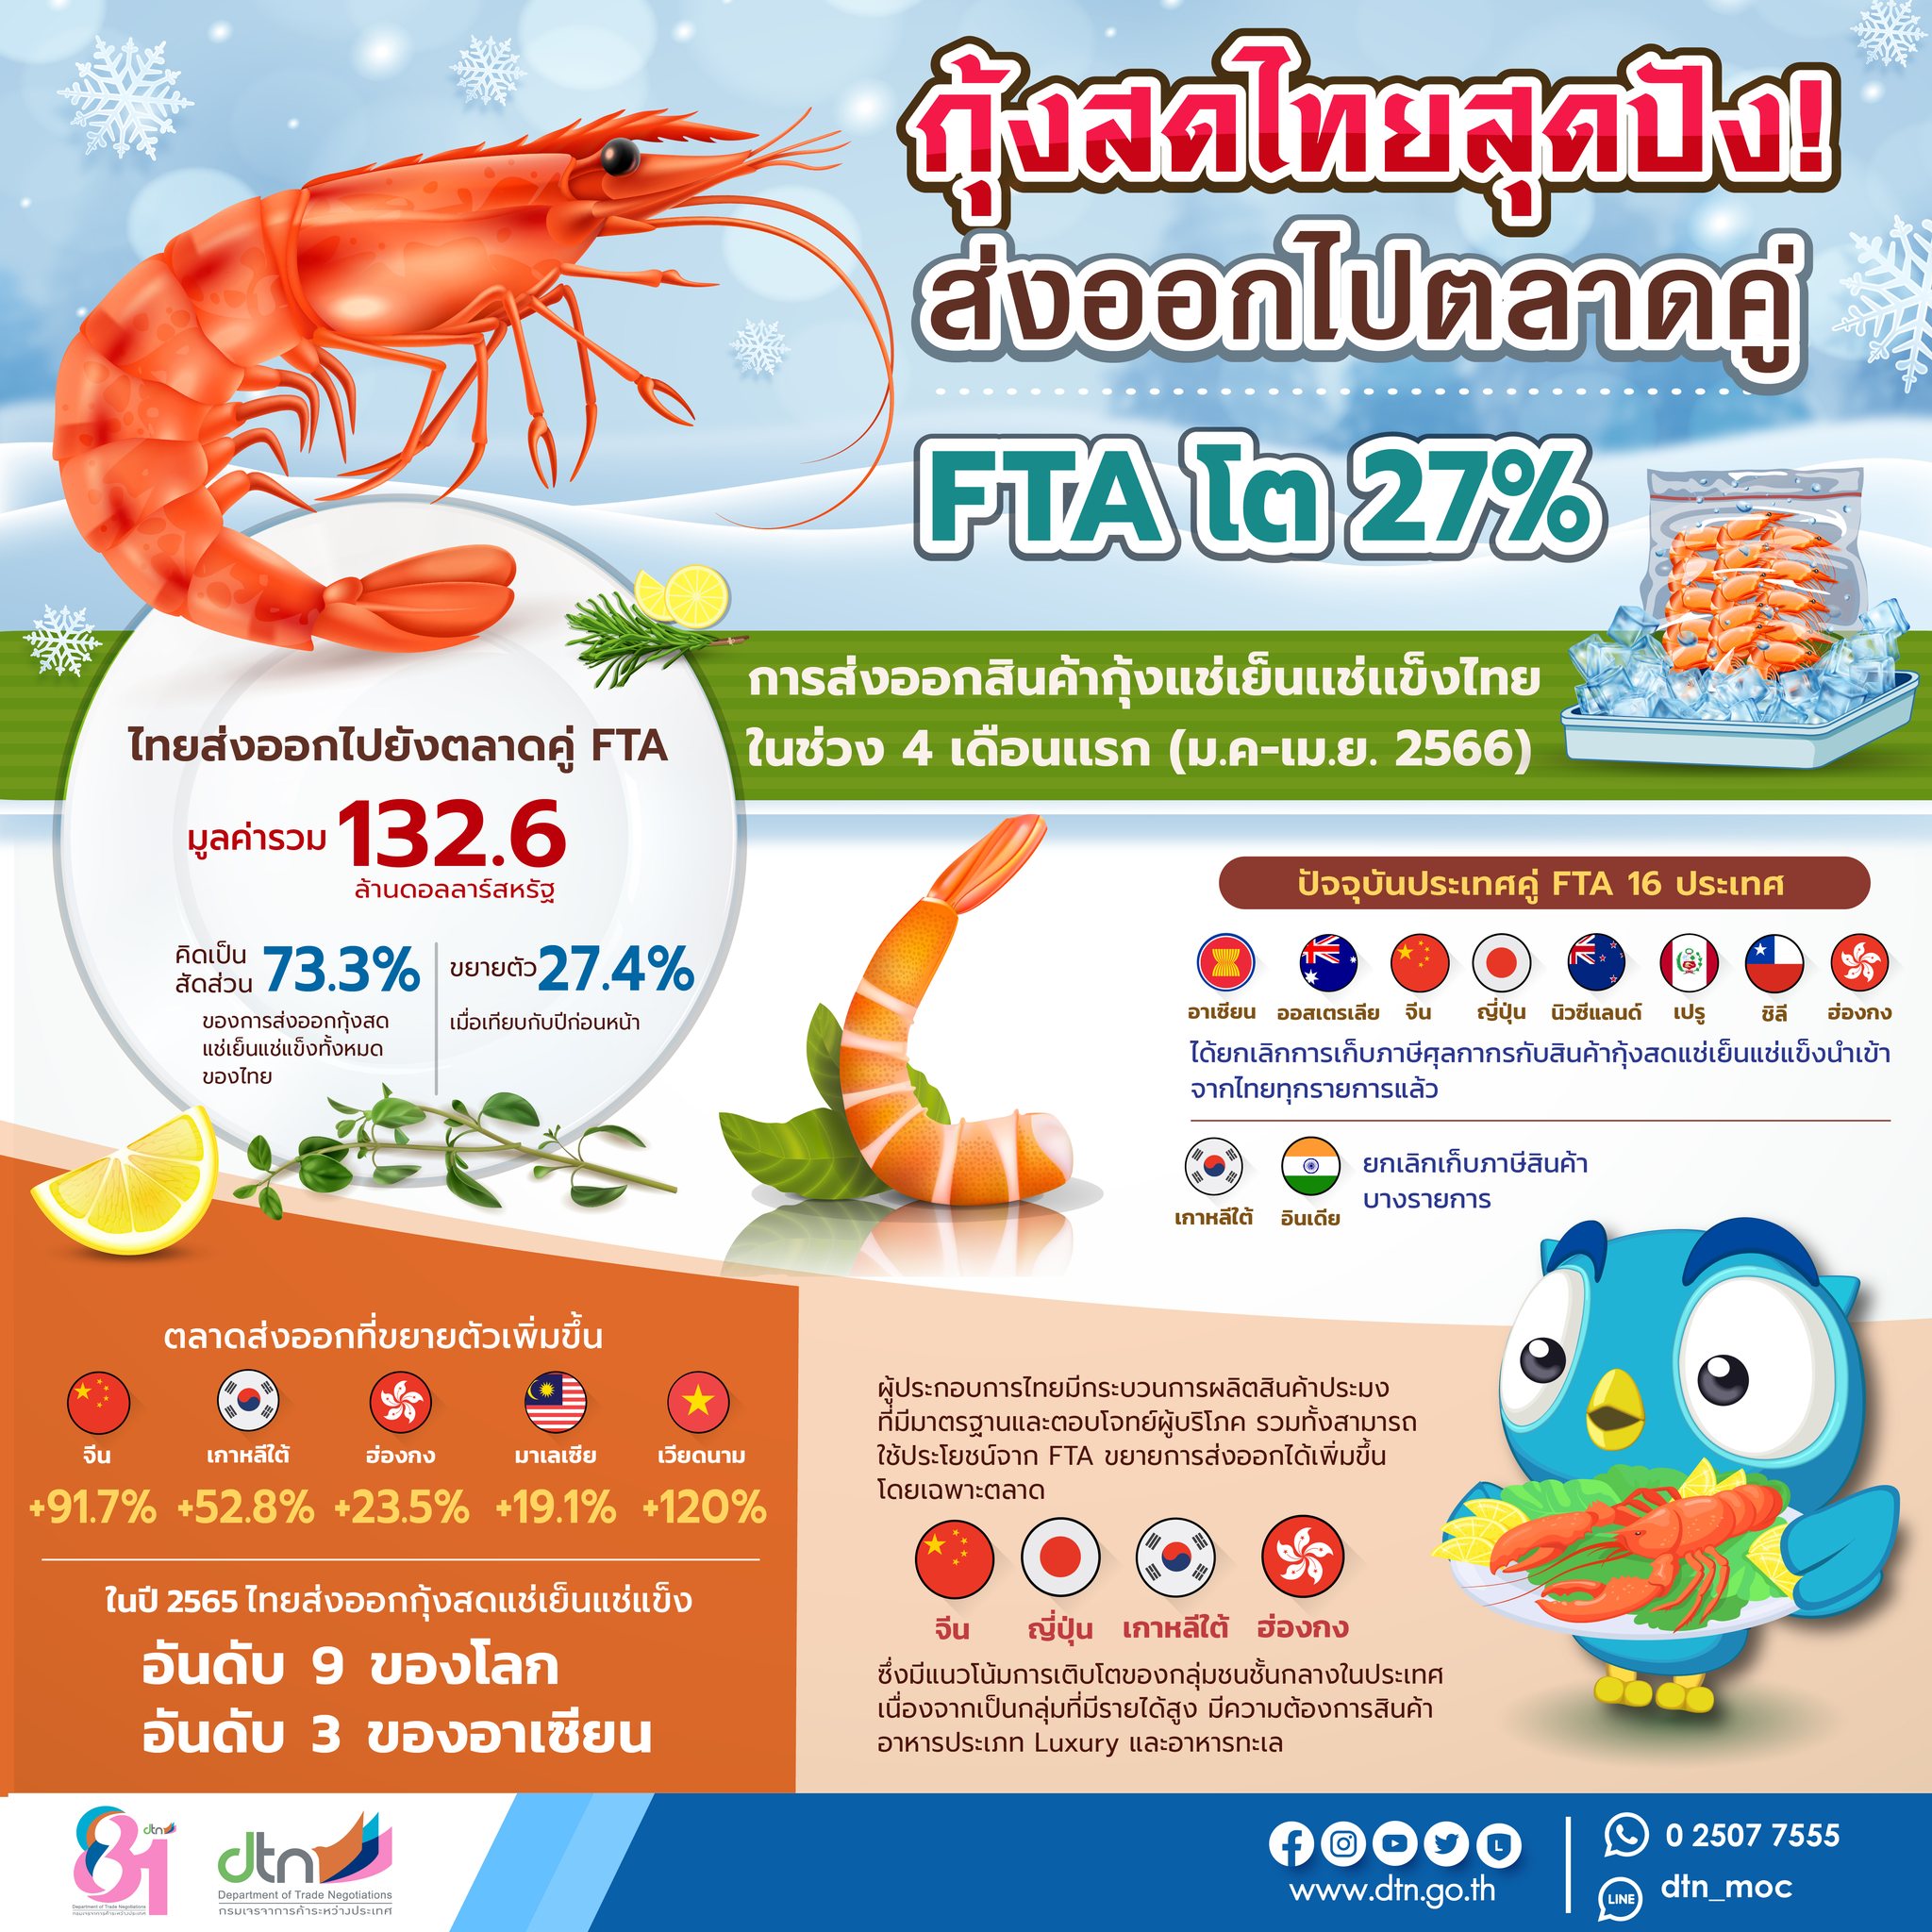 infographic ส่งออกกุ้งสดไทยไปประเทศคู่ FTA